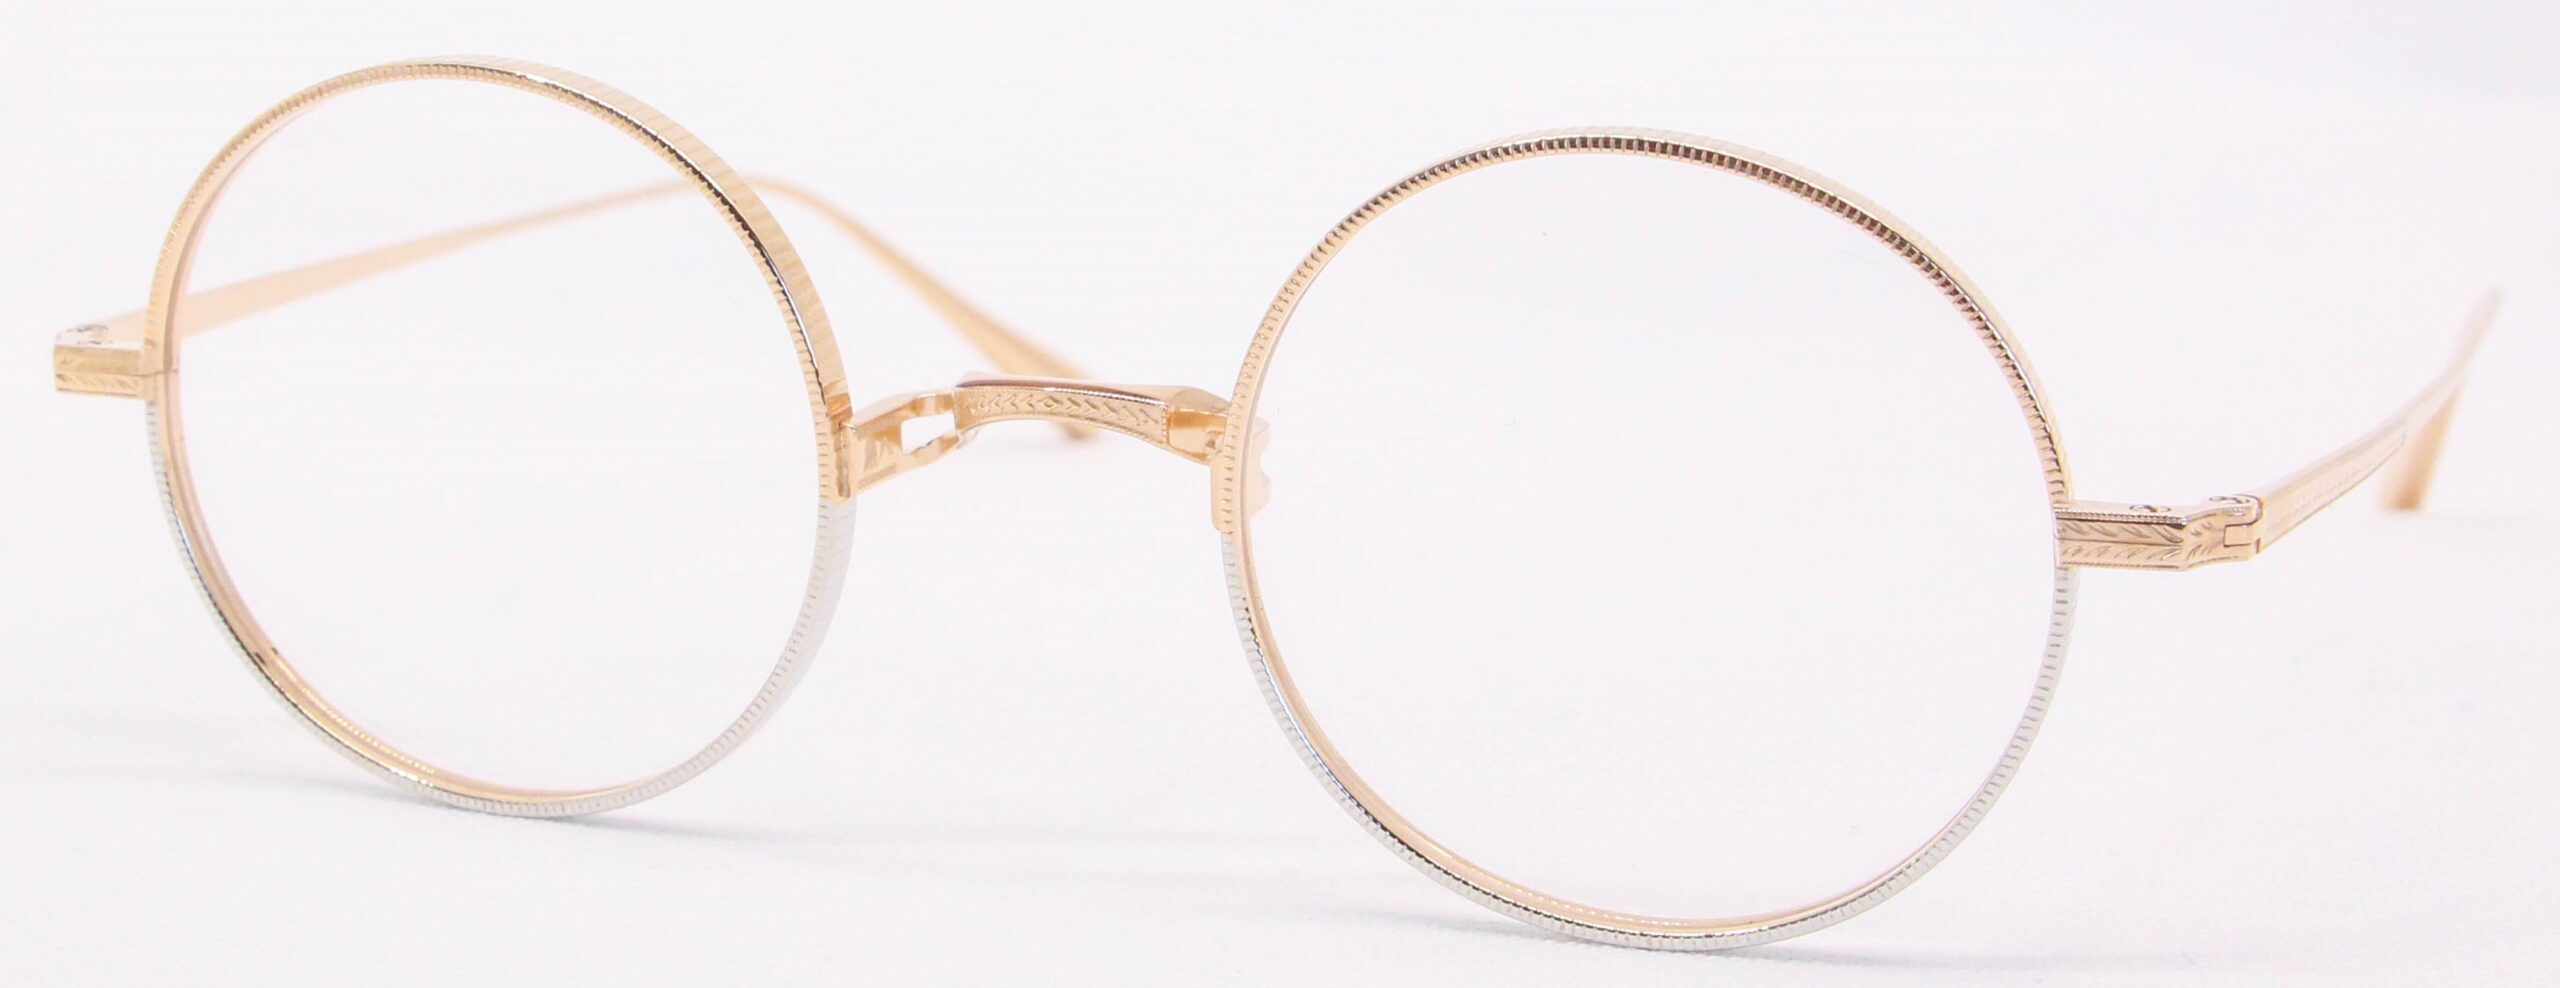 眼鏡のカラータイプC-6 Pink-Gold/Silver